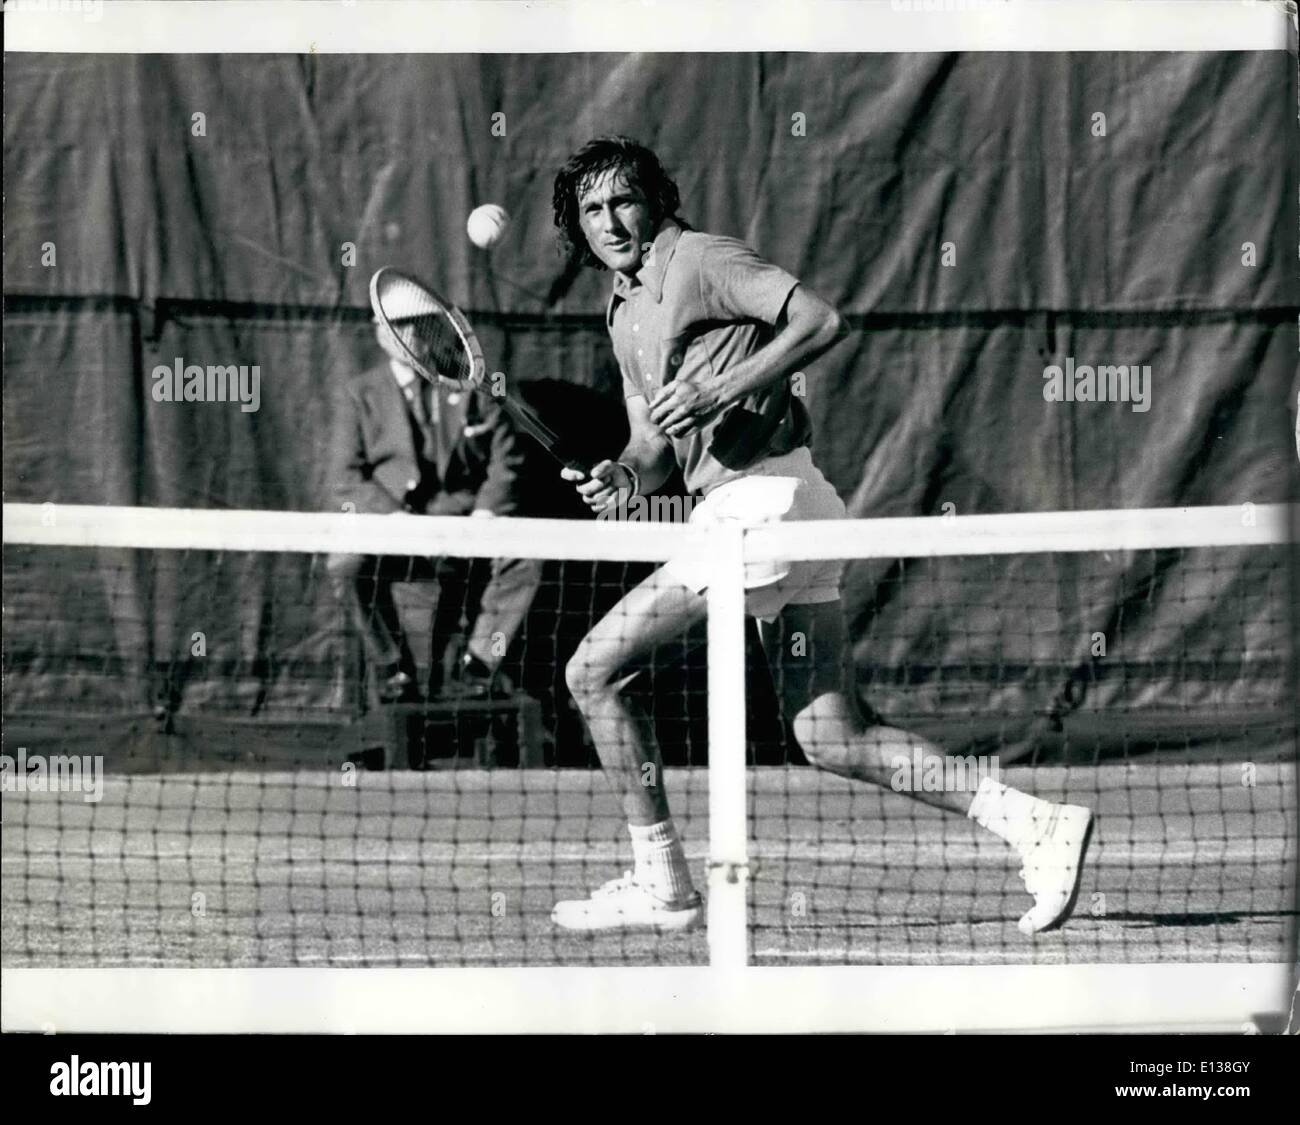 Febrero 29, 2012 - el US Open de tenis, Torneo de Forest Hills, sept 1972 Ilie Nastase ES Foto de stock